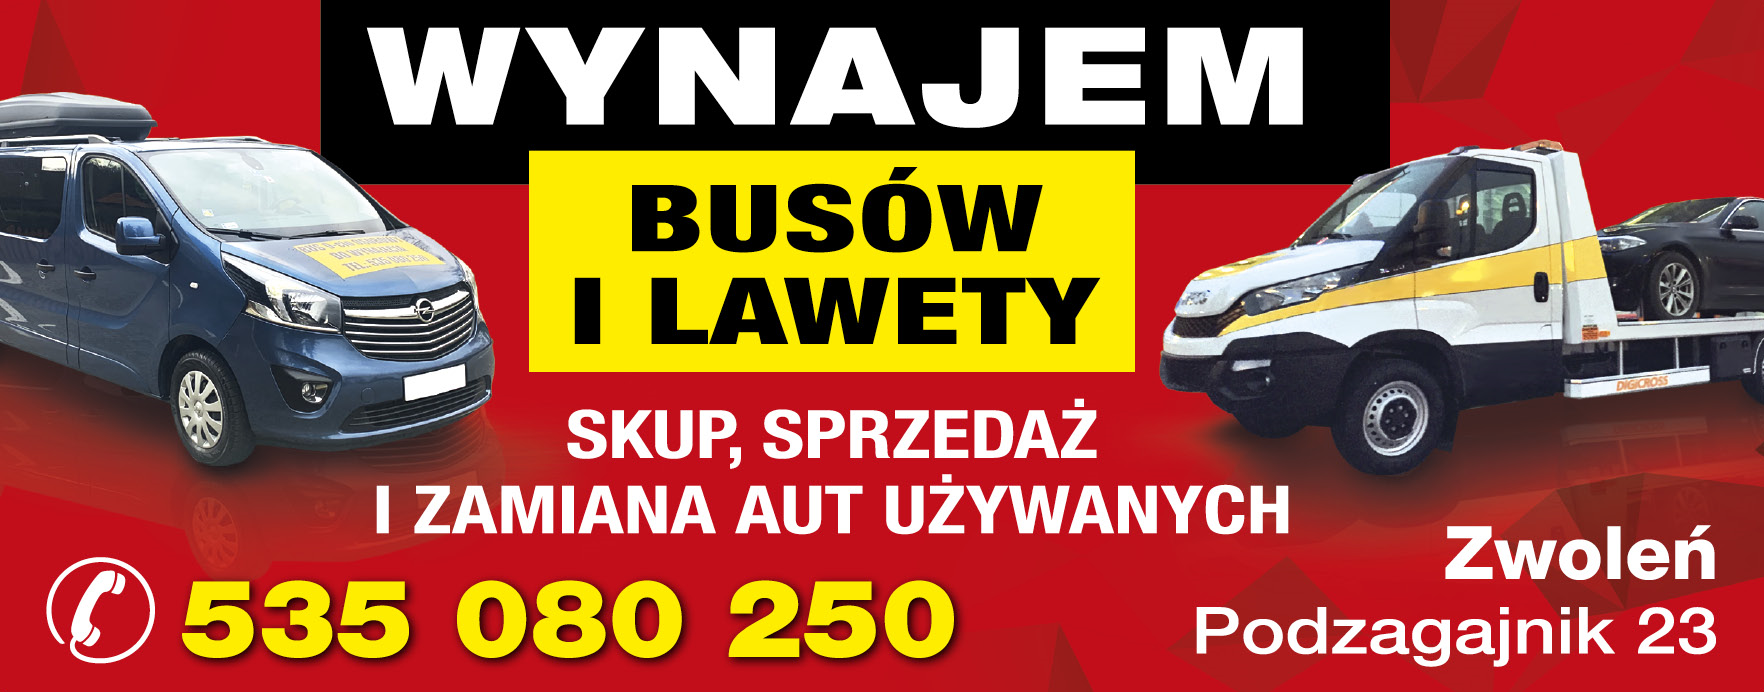 MILA Auto Handel Zwoleń Skup, Sprzedaż i Zamiana Aut Używanych / Wynajem Busów i Lawety